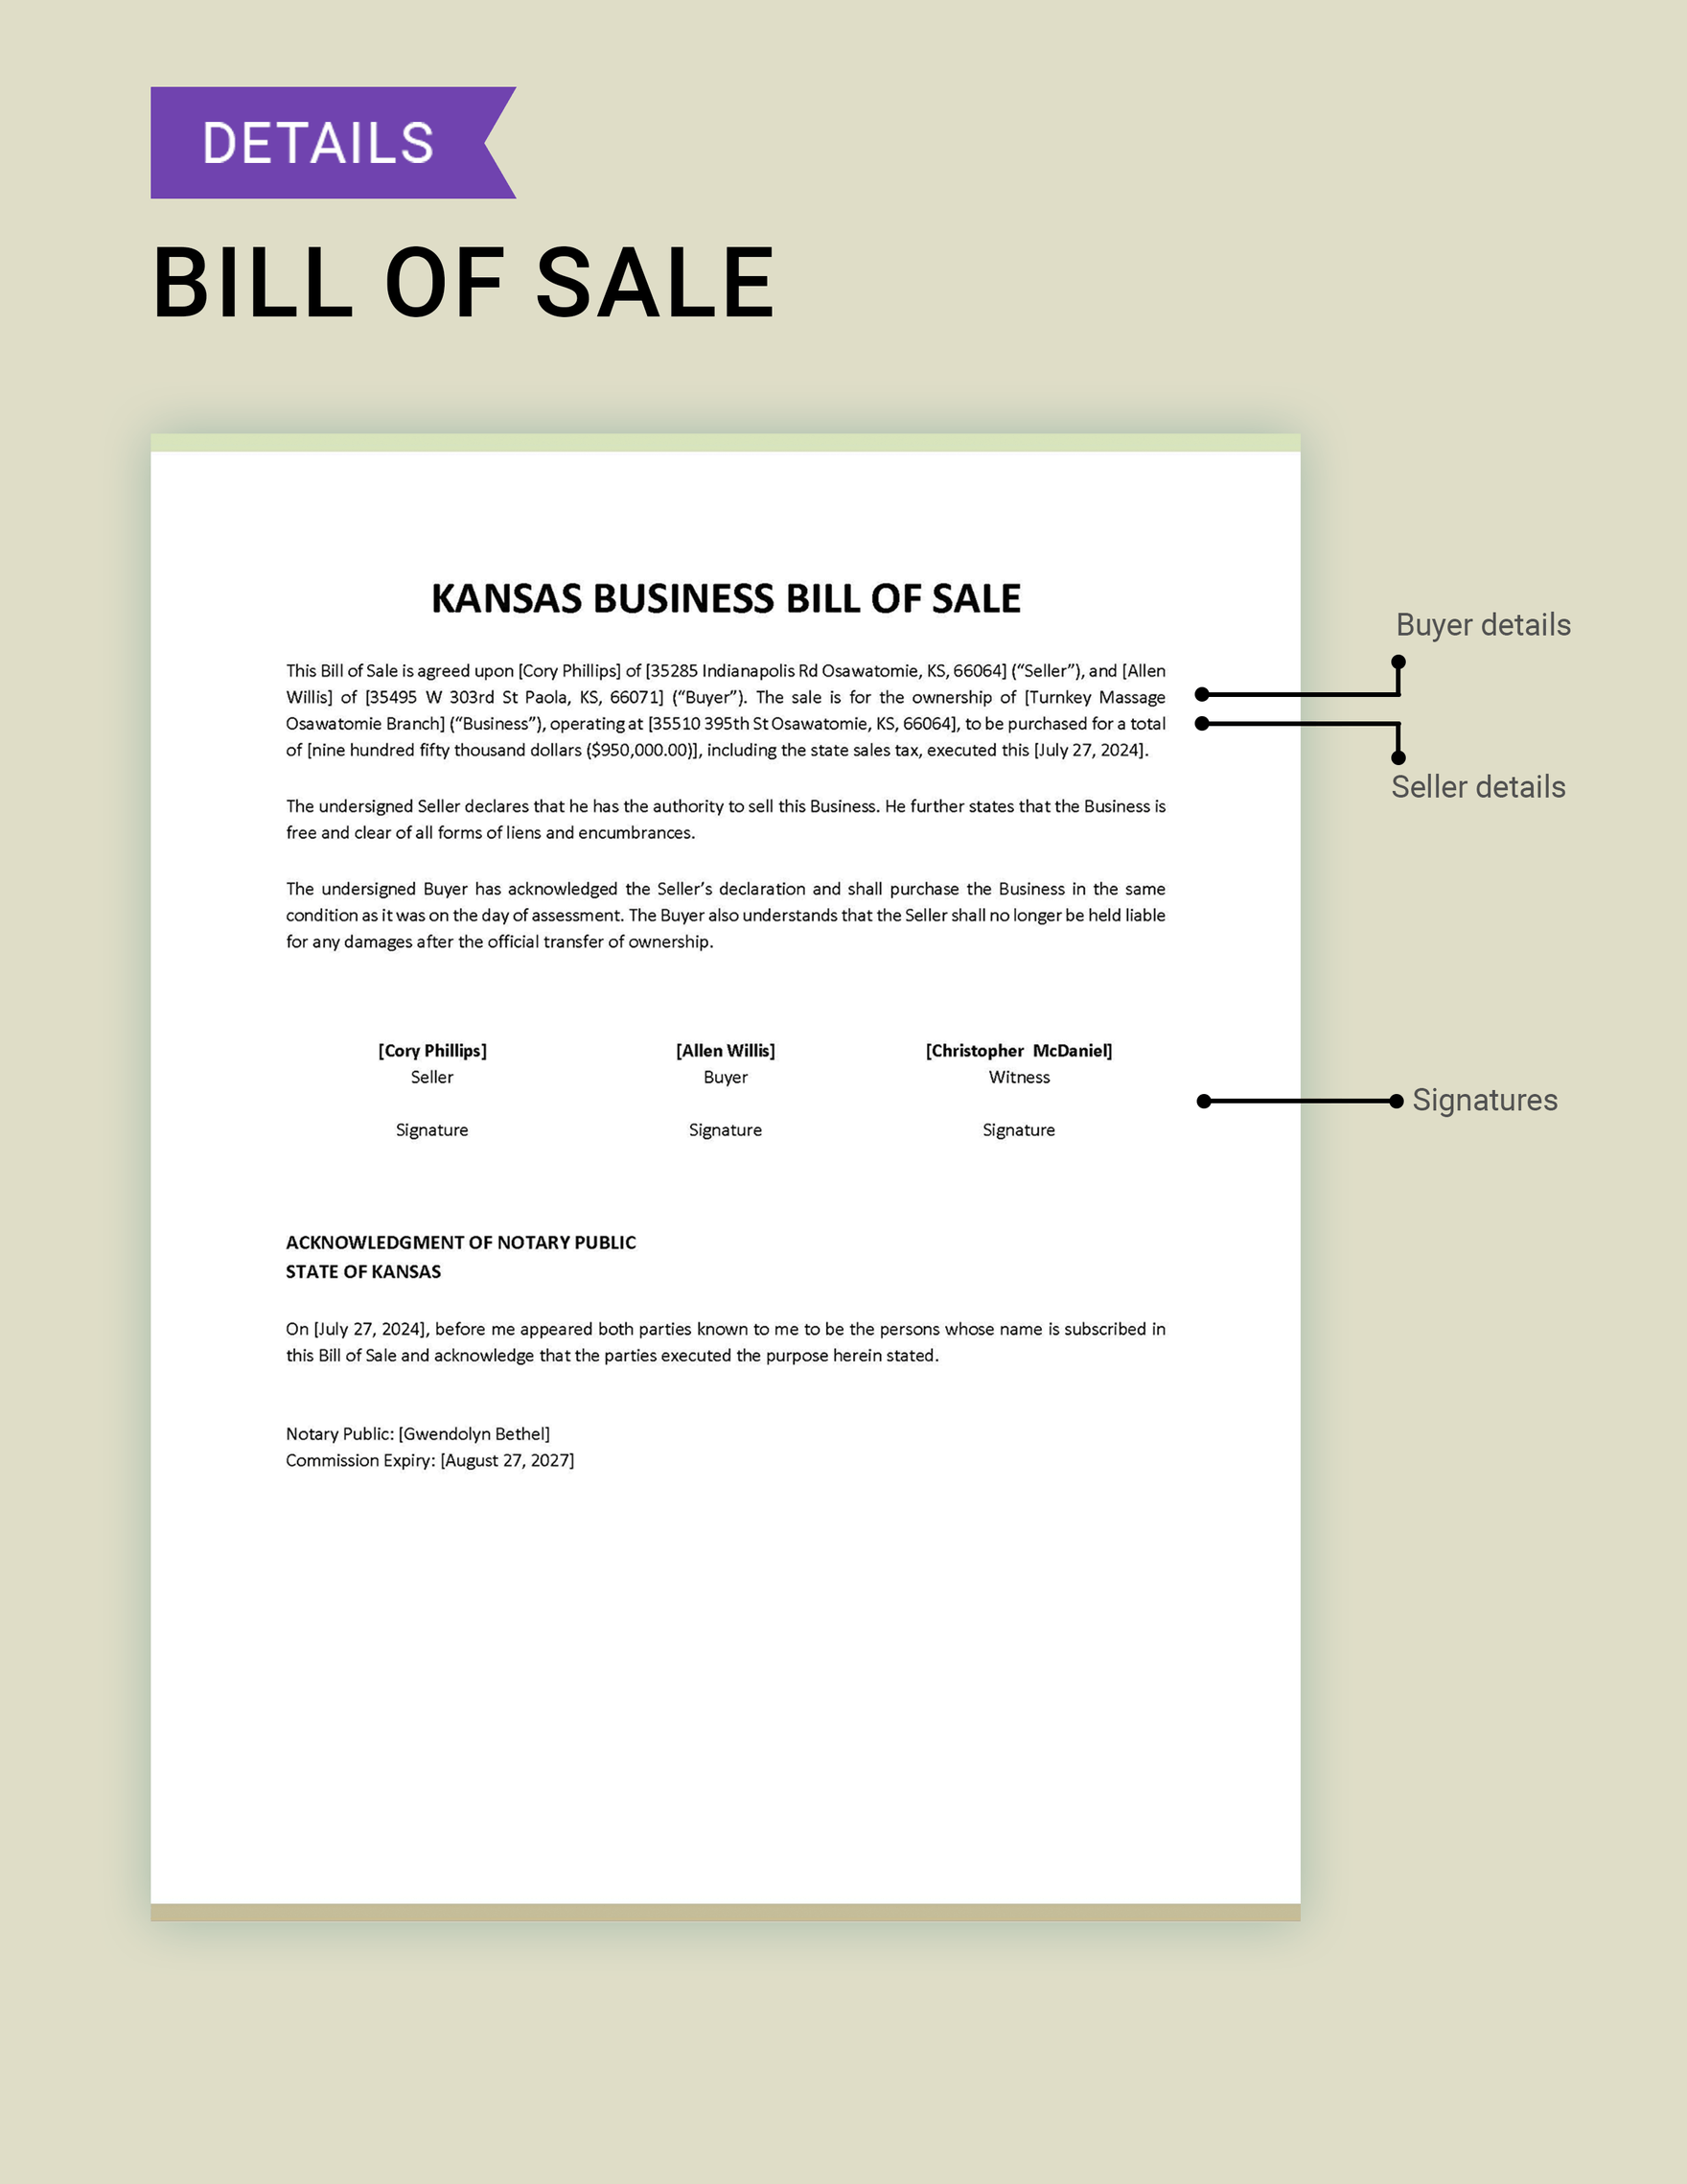 Kansas Business Bill of Sale Template